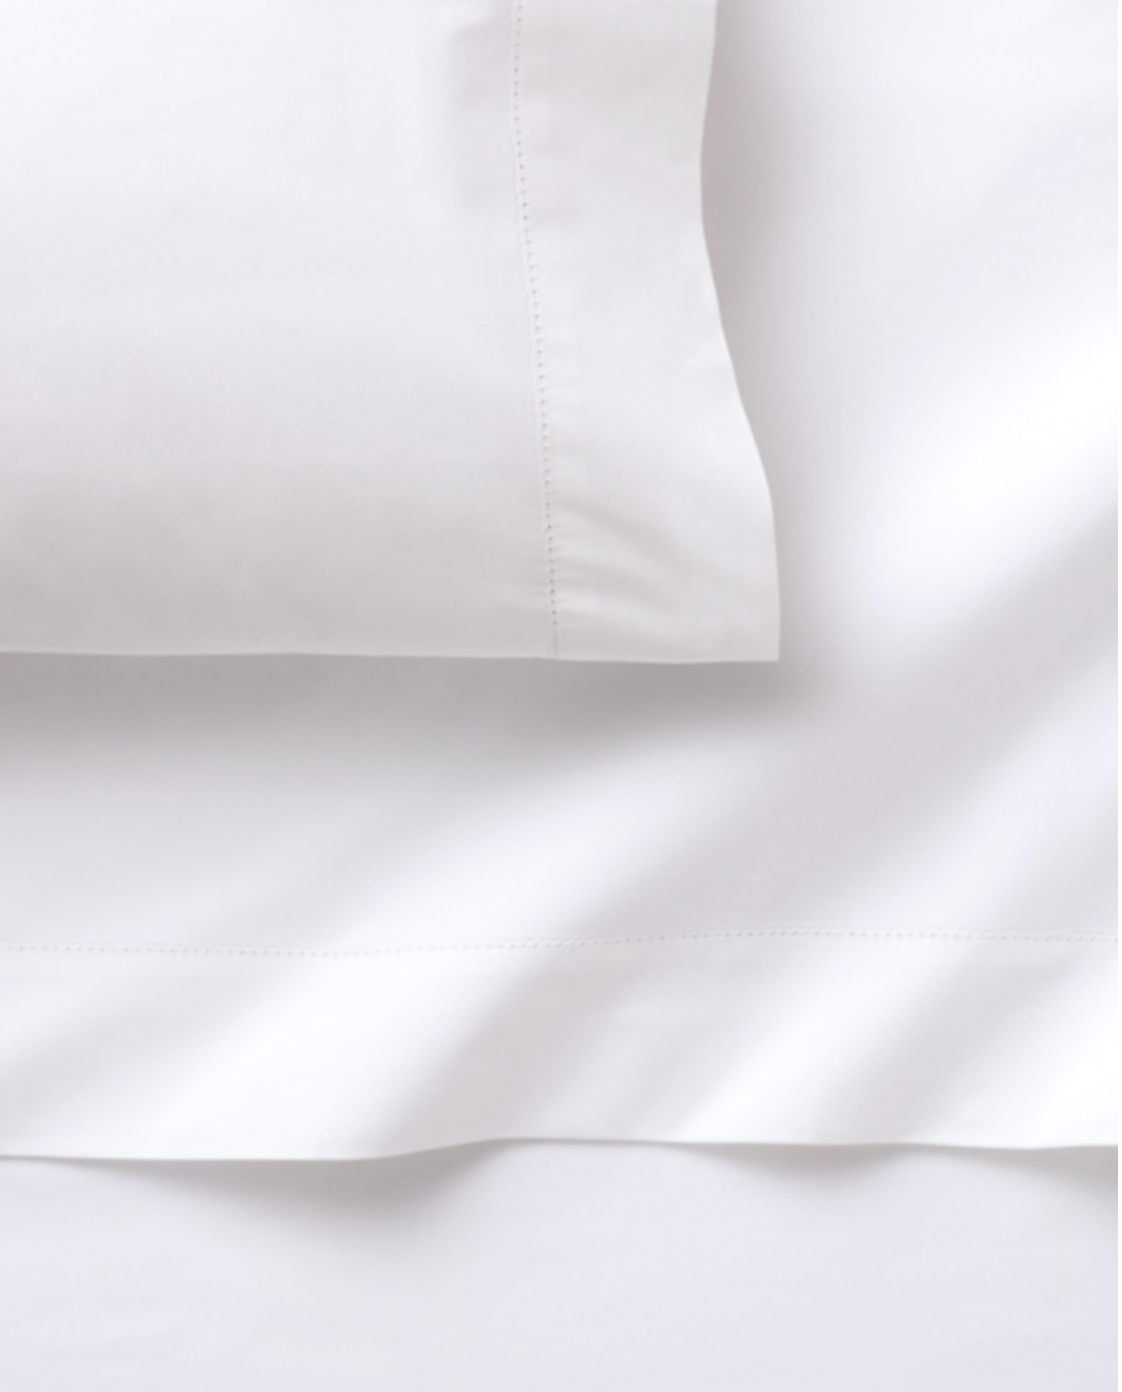 Private Label White Pillowcases